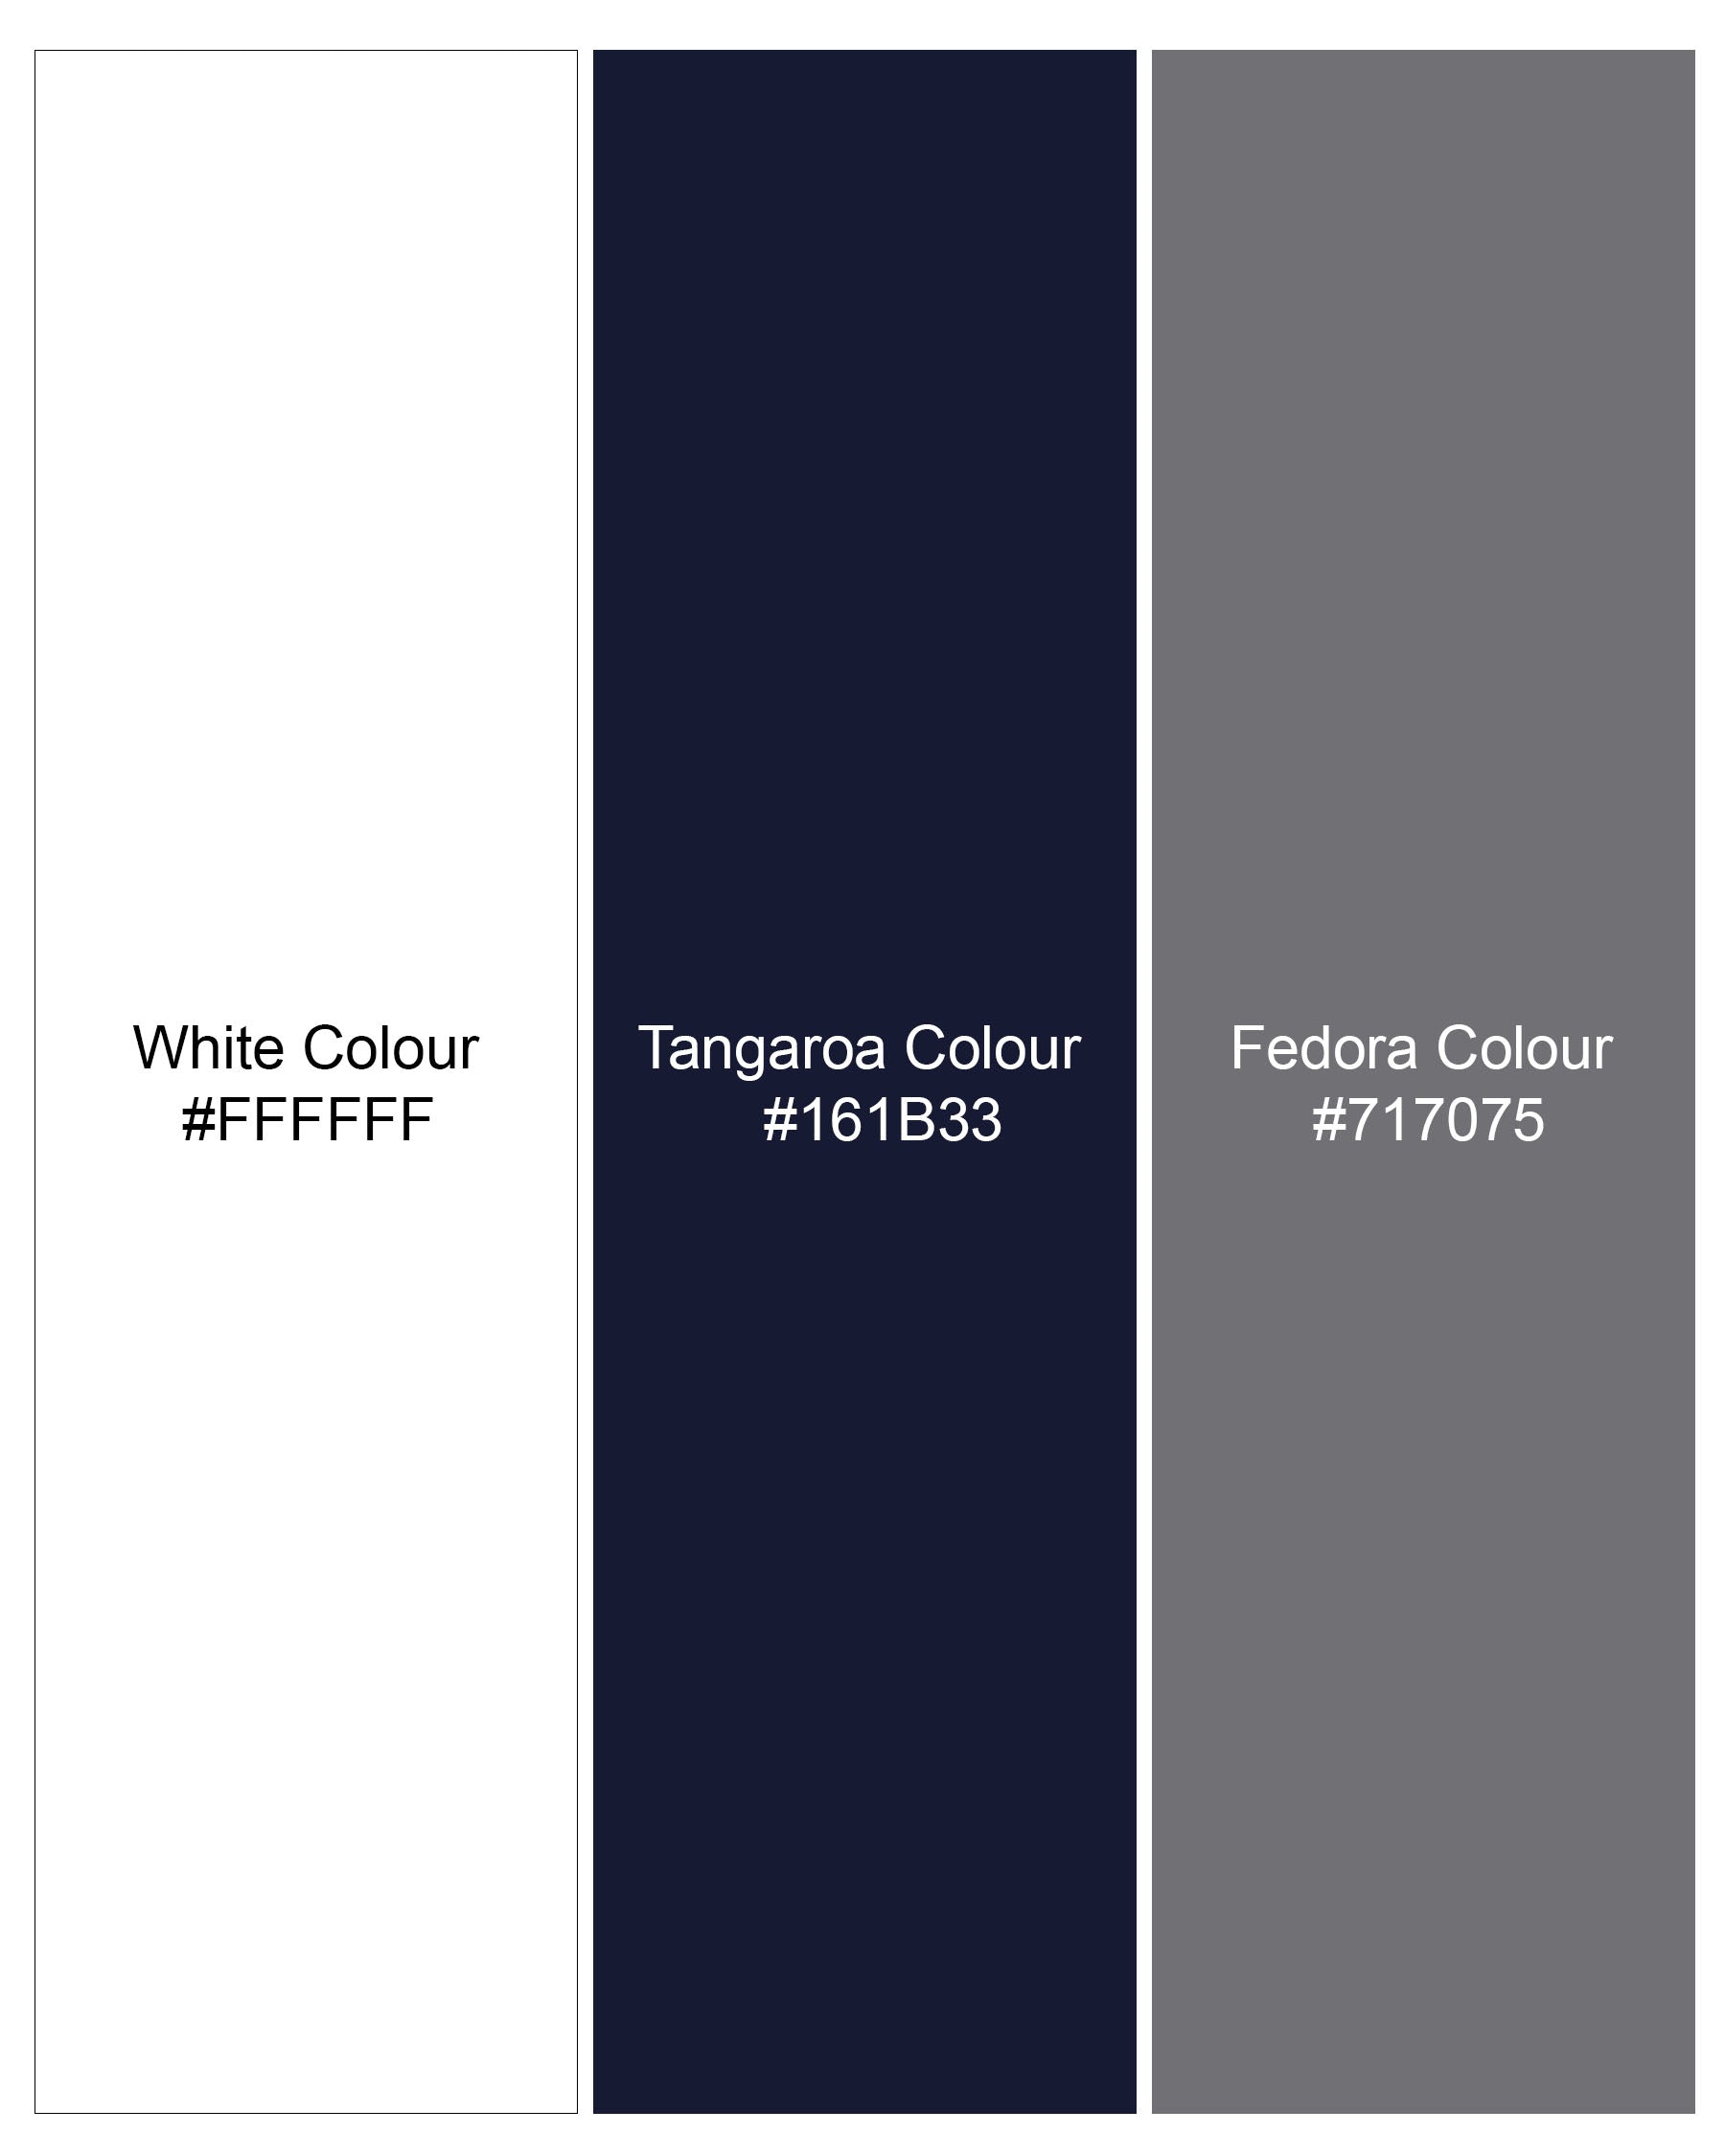 Fedora Gray and Tangaroa Navy Blue Twill Premium Cotton Designer Shirt 7900-P186 -38,7900-P186 -H-38,7900-P186 -39,7900-P186 -H-39,7900-P186 -40,7900-P186 -H-40,7900-P186 -42,7900-P186 -H-42,7900-P186 -44,7900-P186 -H-44,7900-P186 -46,7900-P186 -H-46,7900-P186 -48,7900-P186 -H-48,7900-P186 -50,7900-P186 -H-50,7900-P186 -52,7900-P186 -H-52